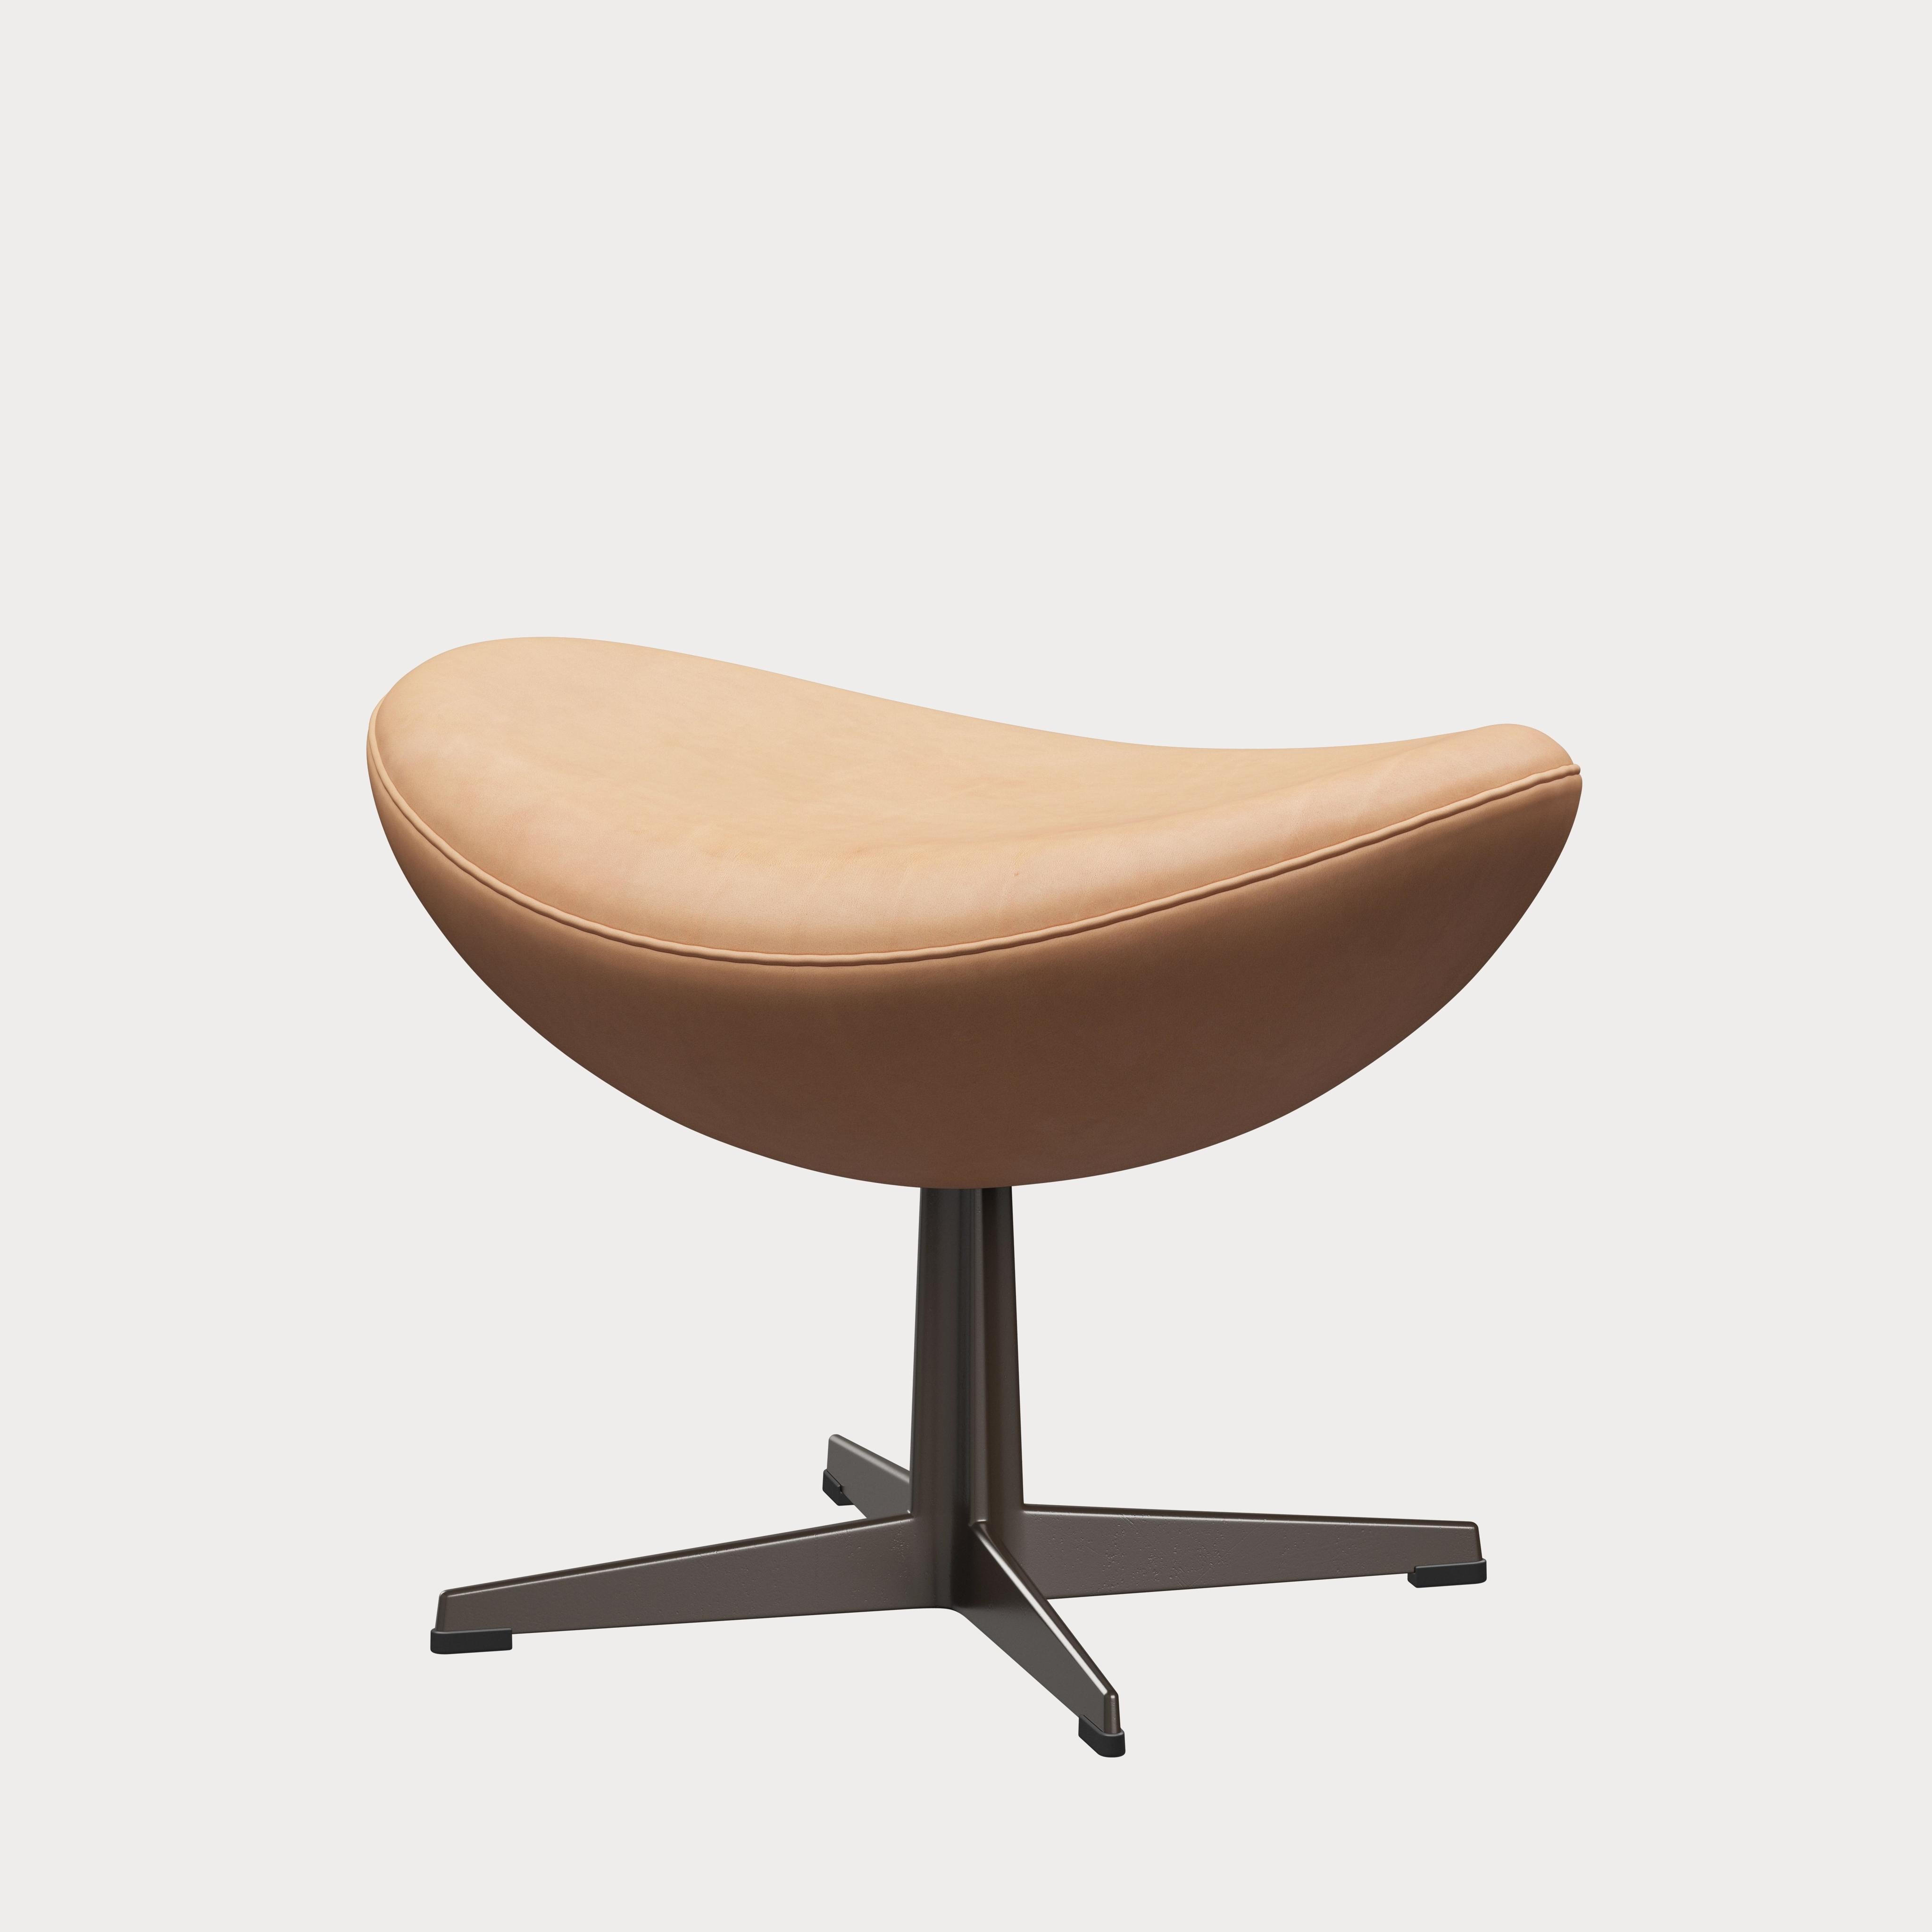 Arne Jacobsen 'Egg' Footstool for Fritz Hansen in Leather Upholstery (Cat. 5) For Sale 5